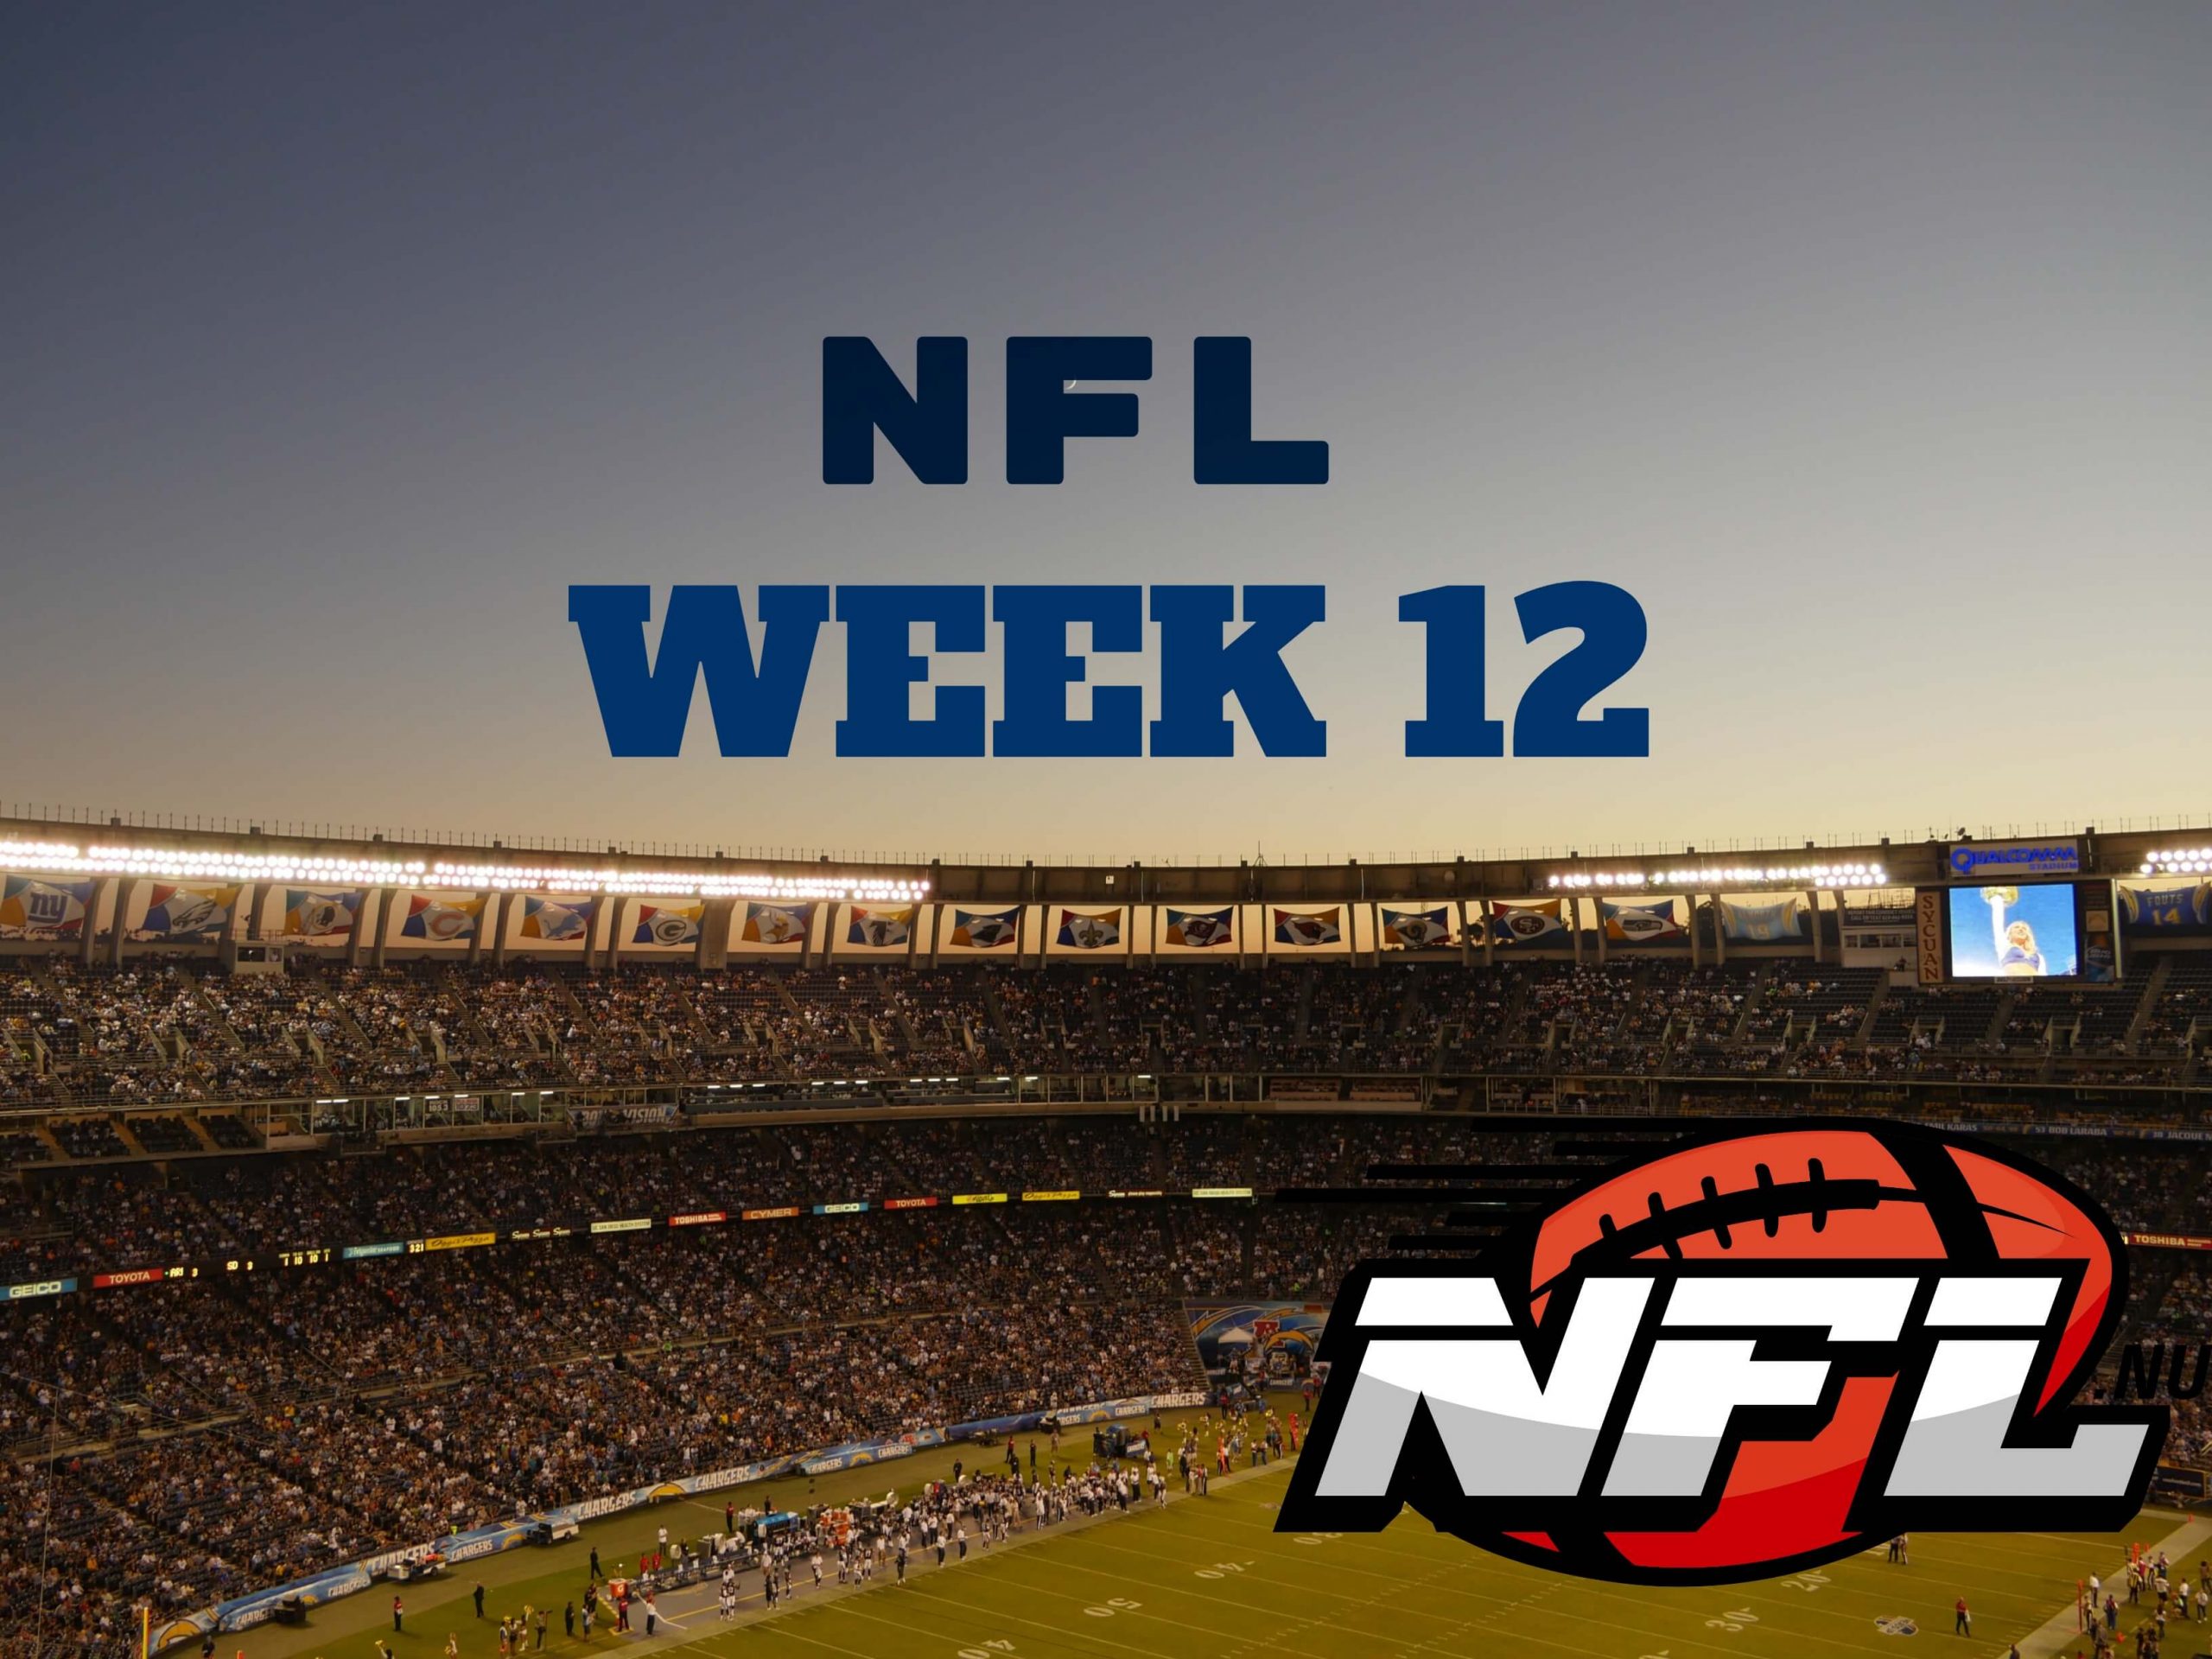 NFL Week 12